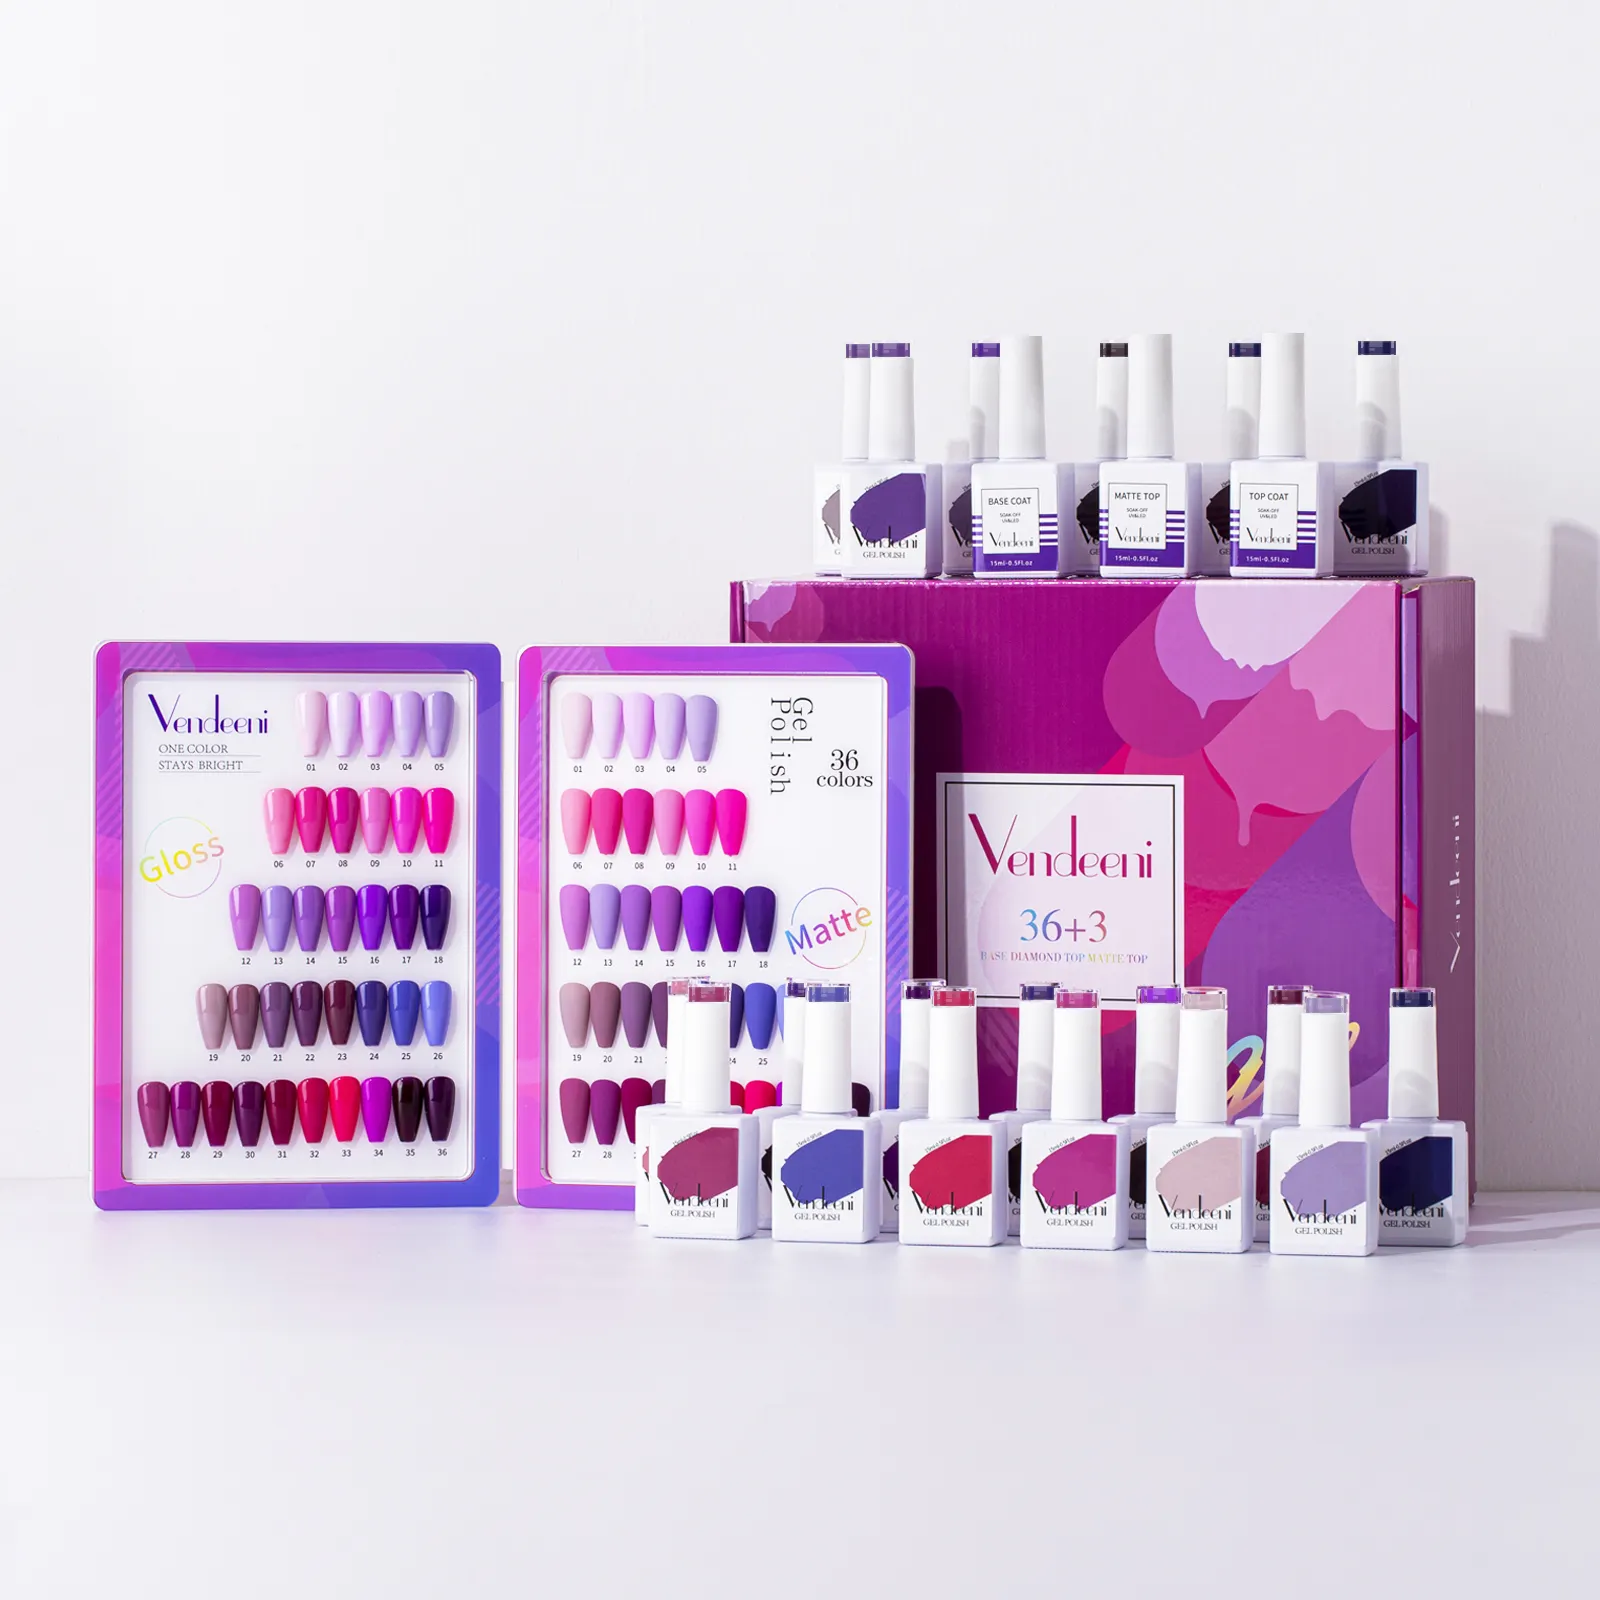 Vendeeni nouvelle tendance Top qualité Fashional violet rose Gel vernis à ongles Gel solide Nail Art couleurs Kit ensemble